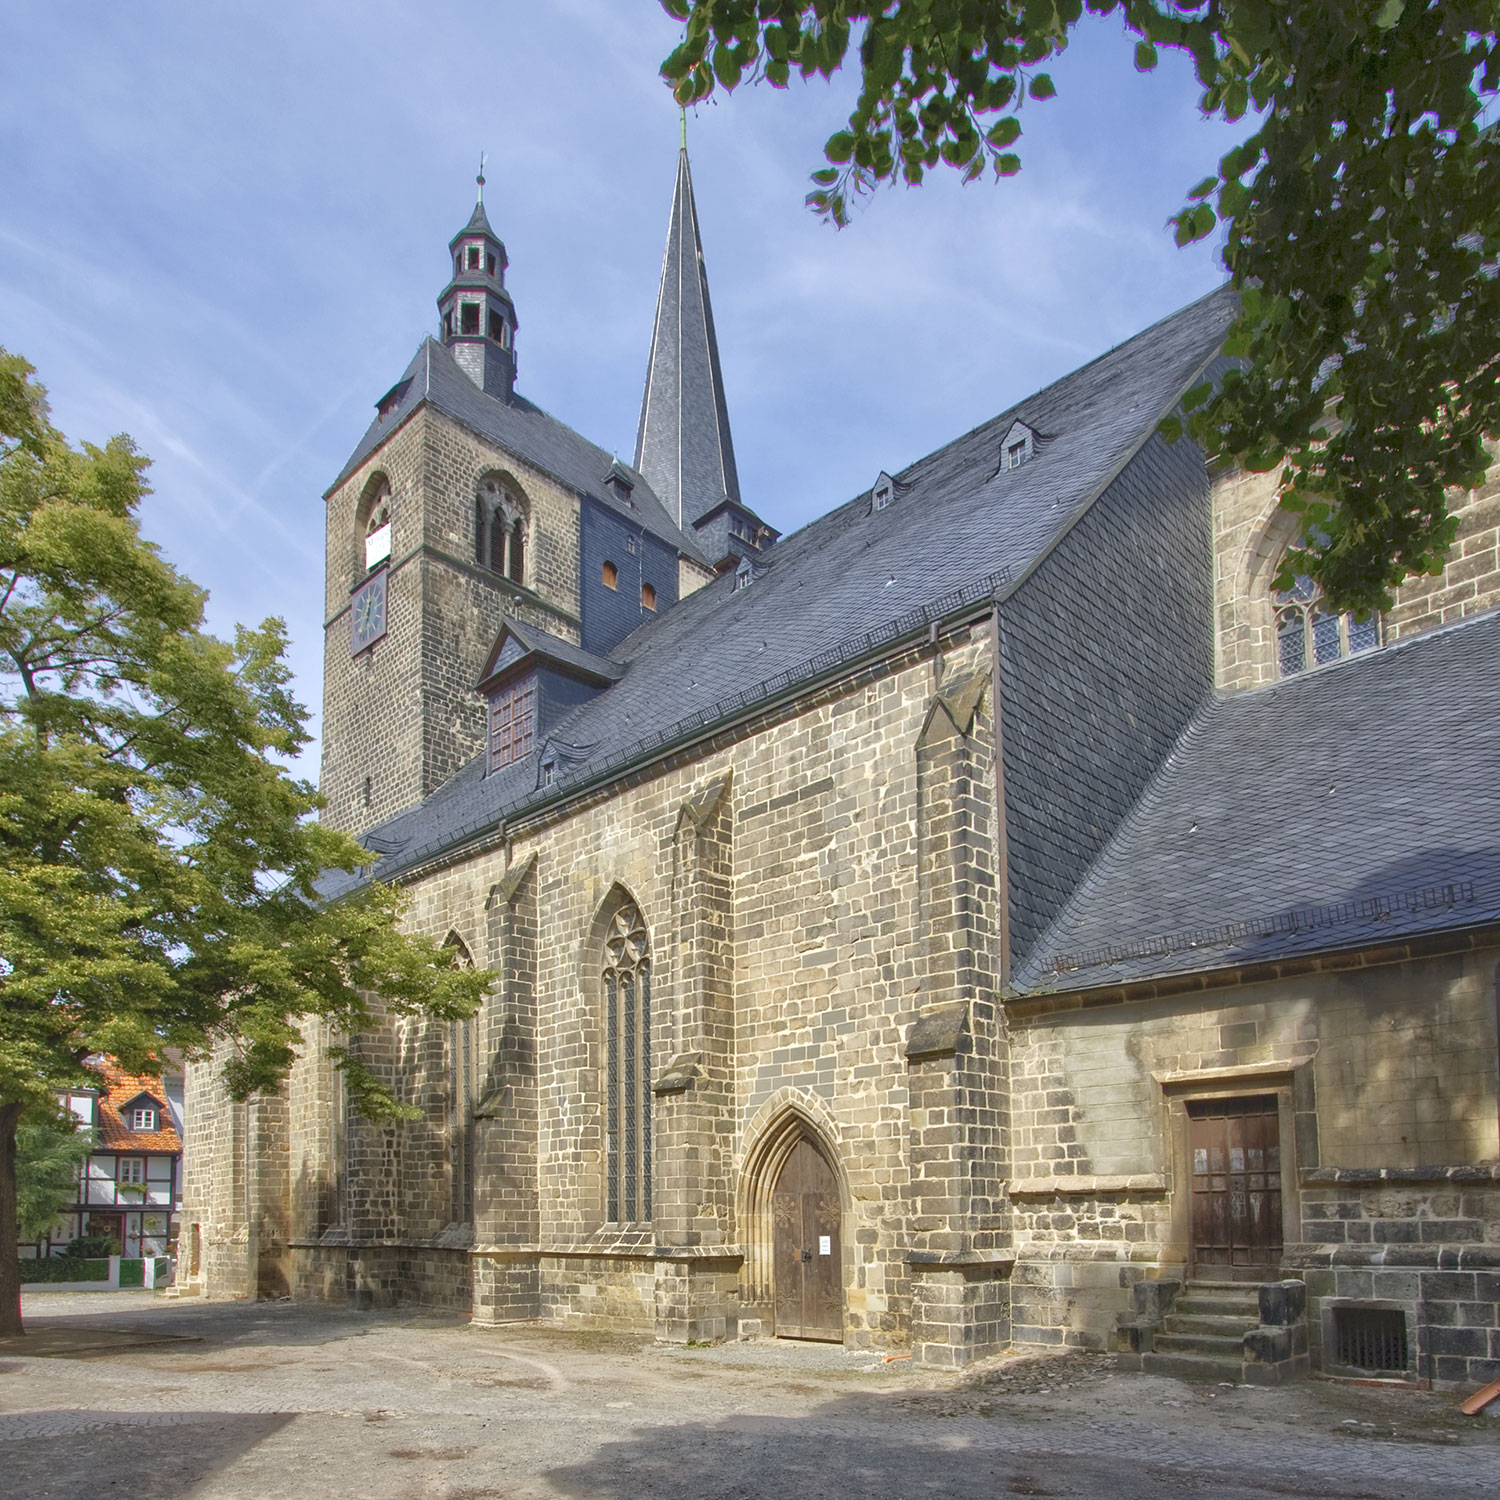 Südfassade der erstmals im Jahr 1233 erwähnten Marktkirche St. Benediktii in Quedlinburg mit Blick auf die Westtürme und die Sakristai.